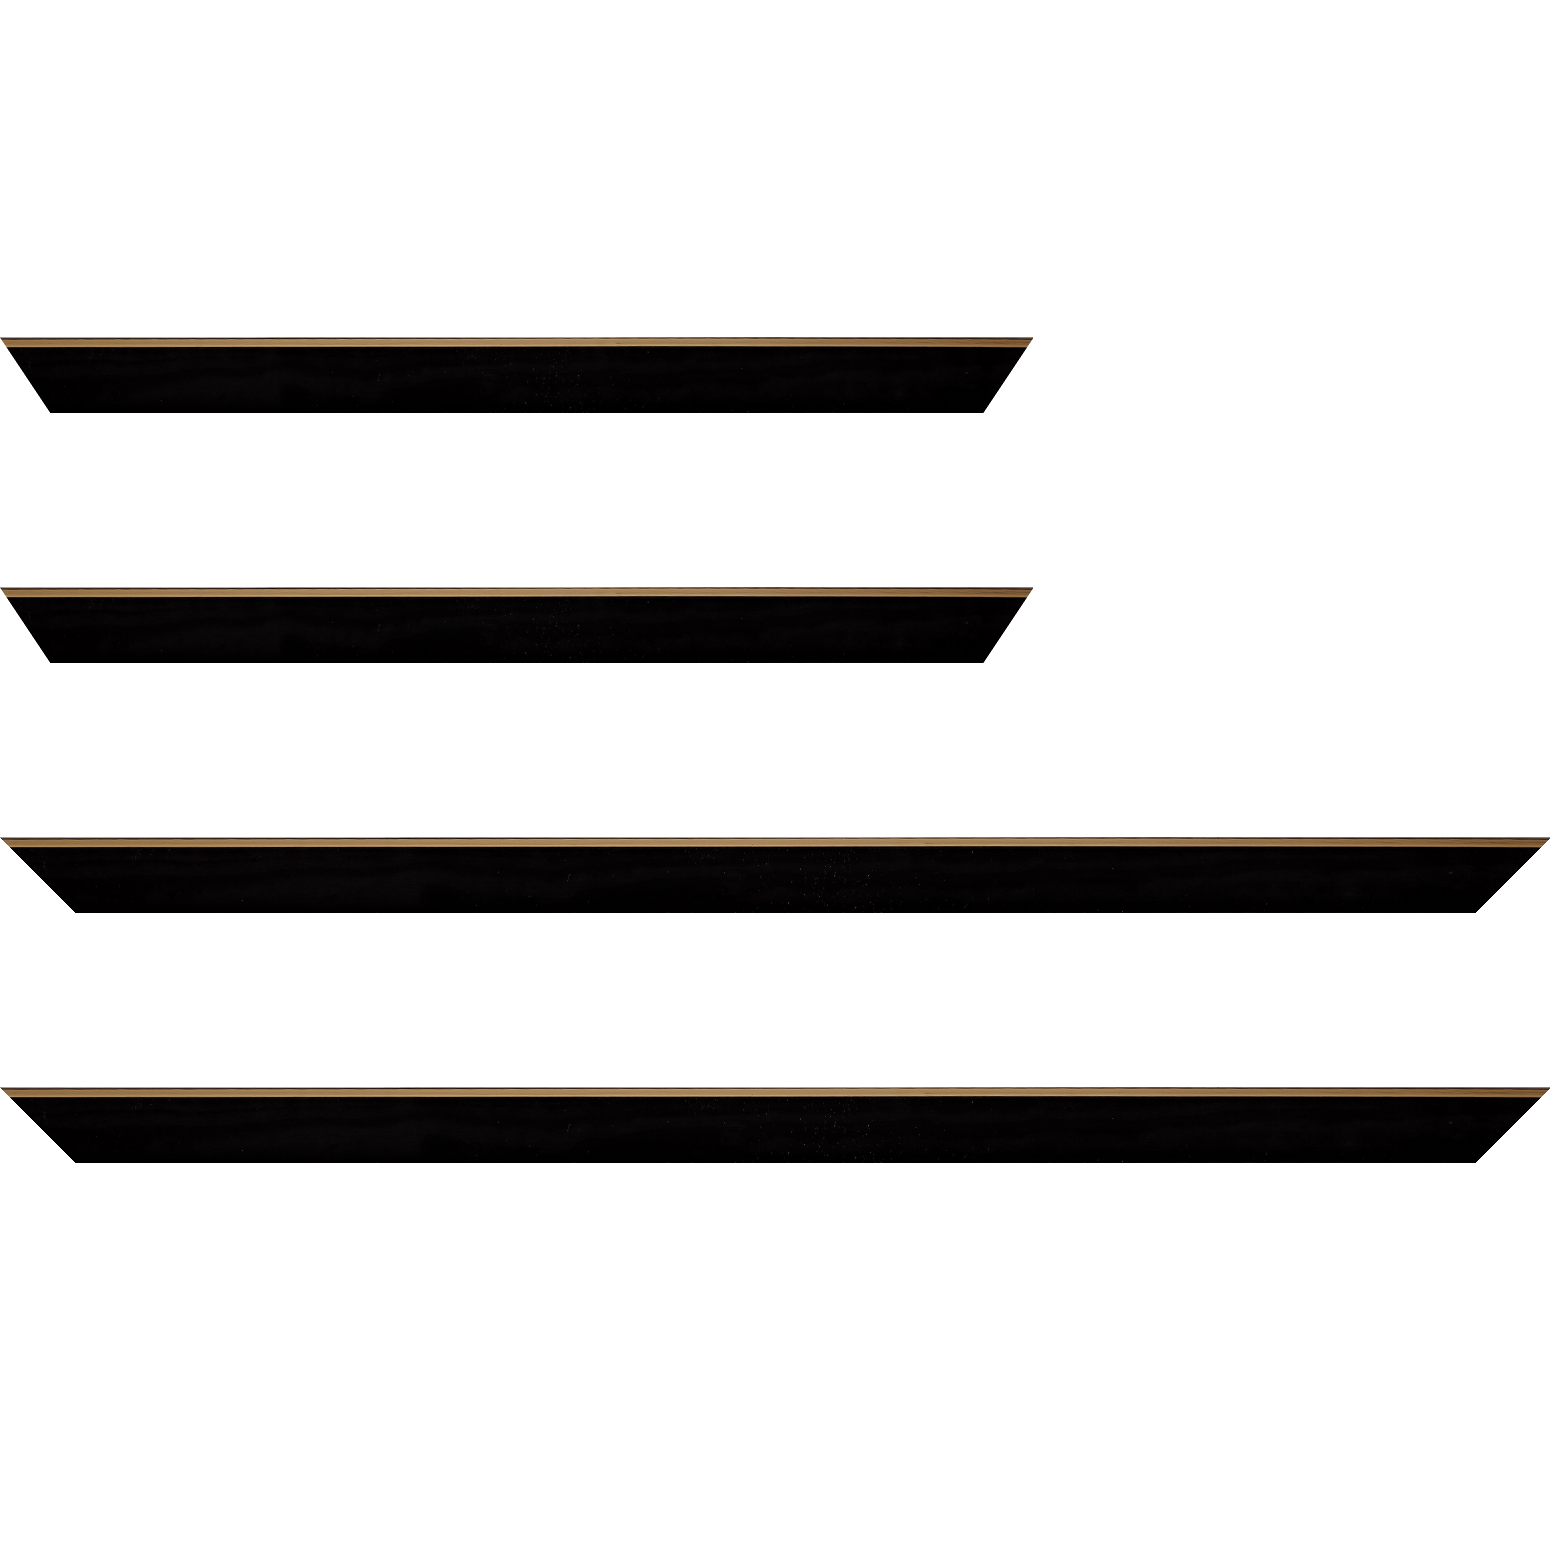 Baguette bois profil arrondi en pente plongeant largeur 2.4cm couleur noir satiné,veine du bois  apparent (pin) , angle du cadre extérieur filet or chromé - 40x60